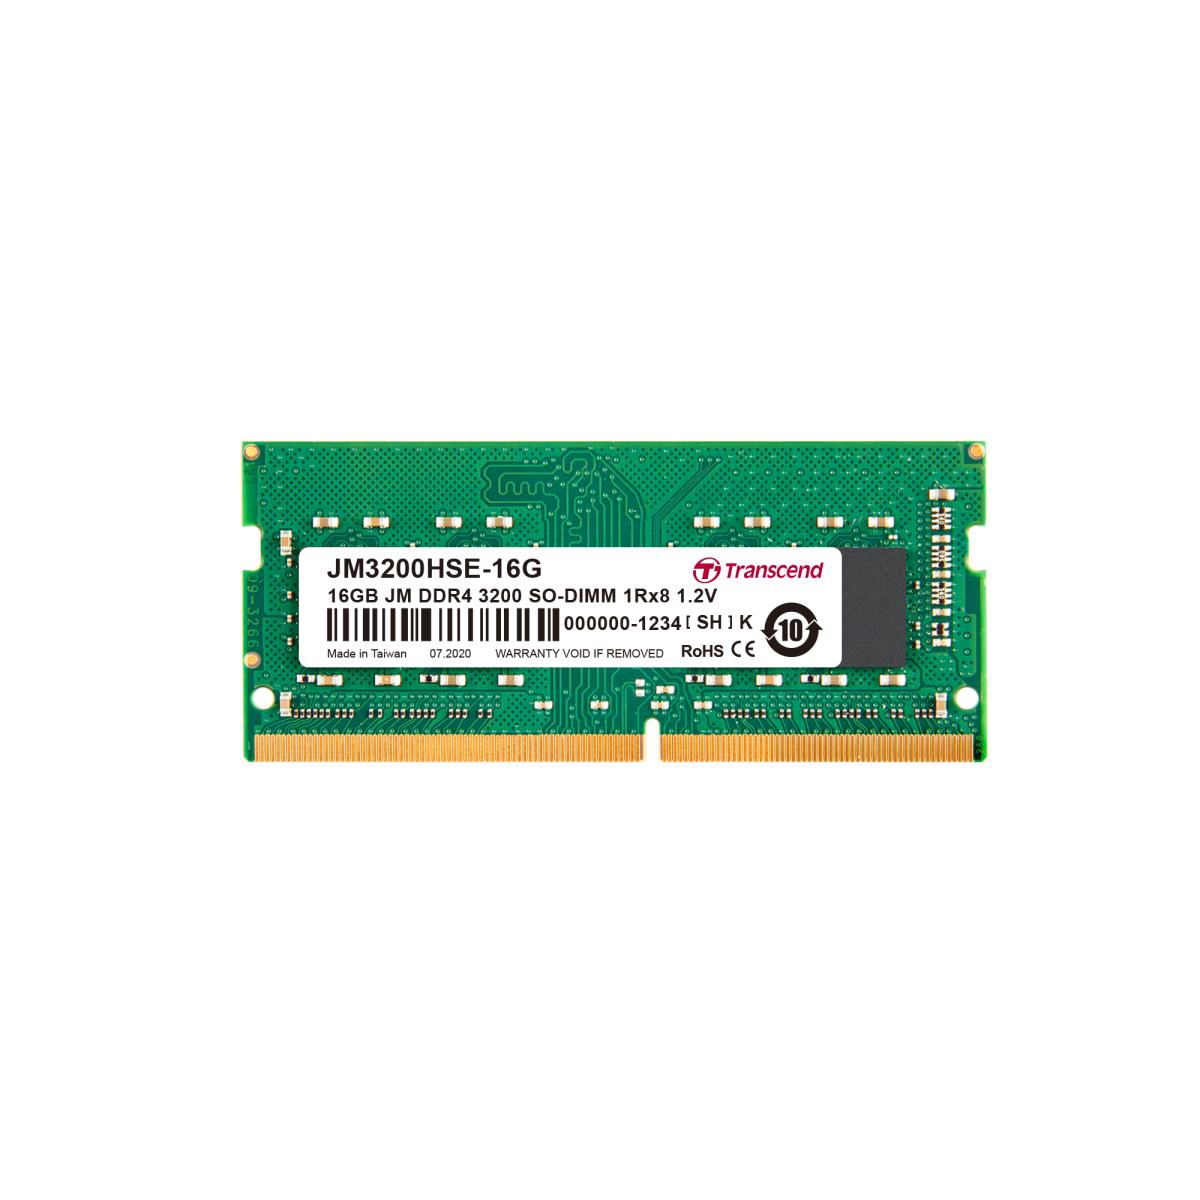 Buy Transcend JetRam 32GB DDR5 Unbuffered SO-DIMM RAM Module (1 x